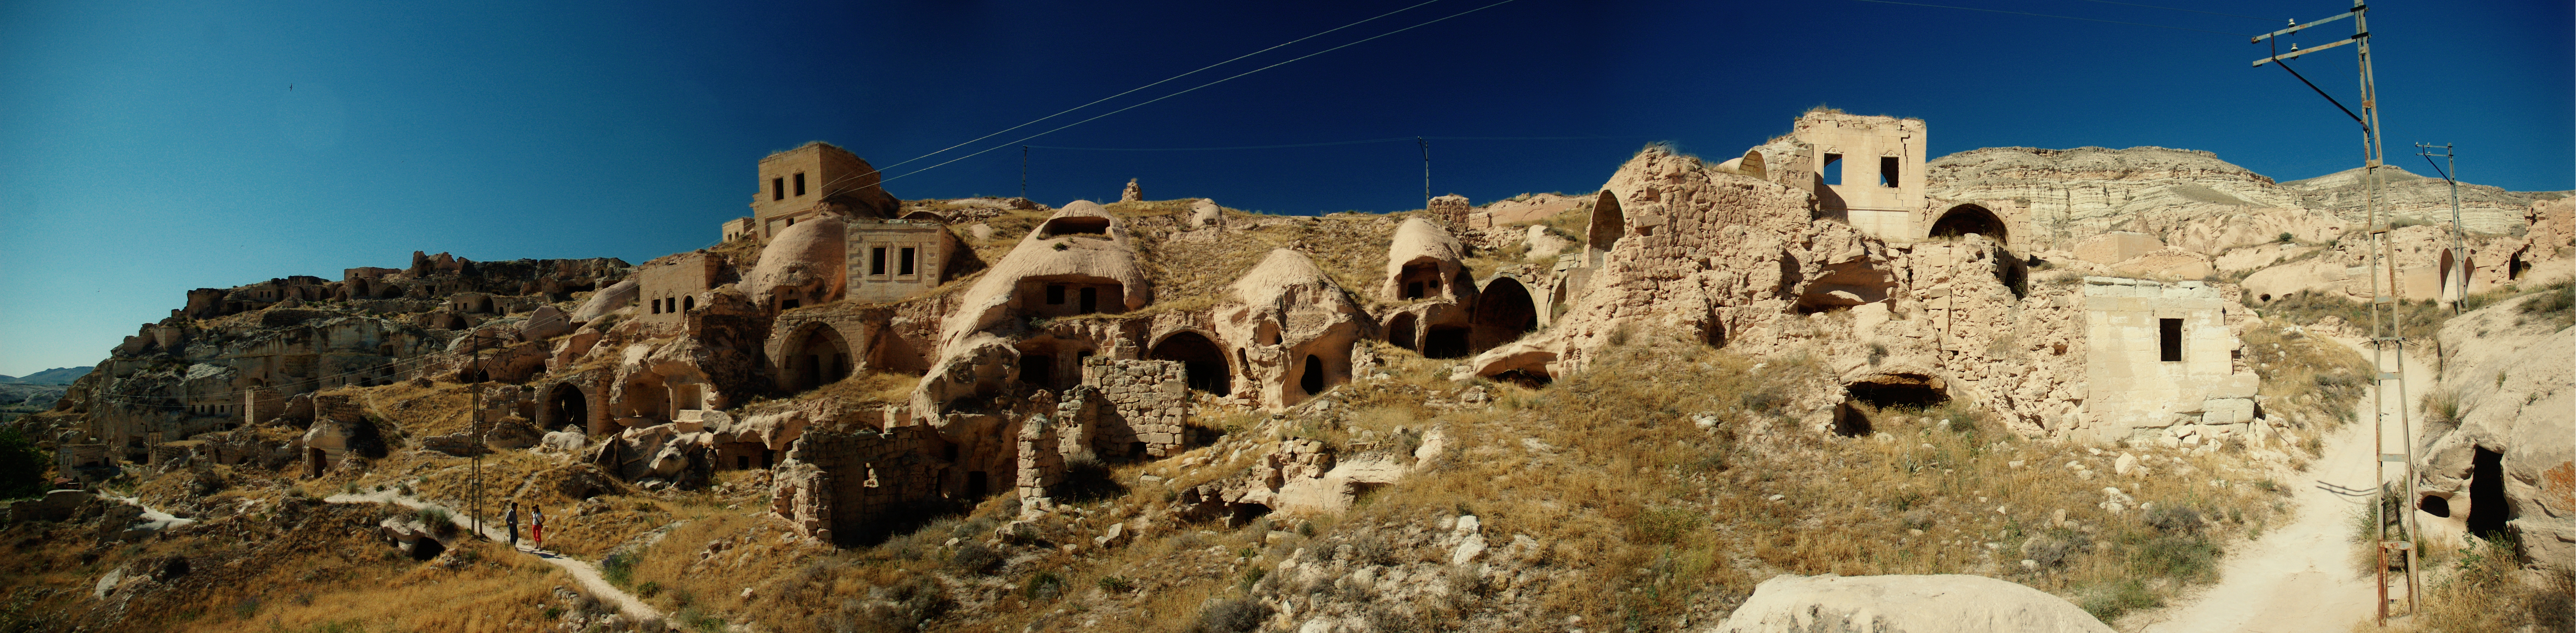 cappadocia_panoramic